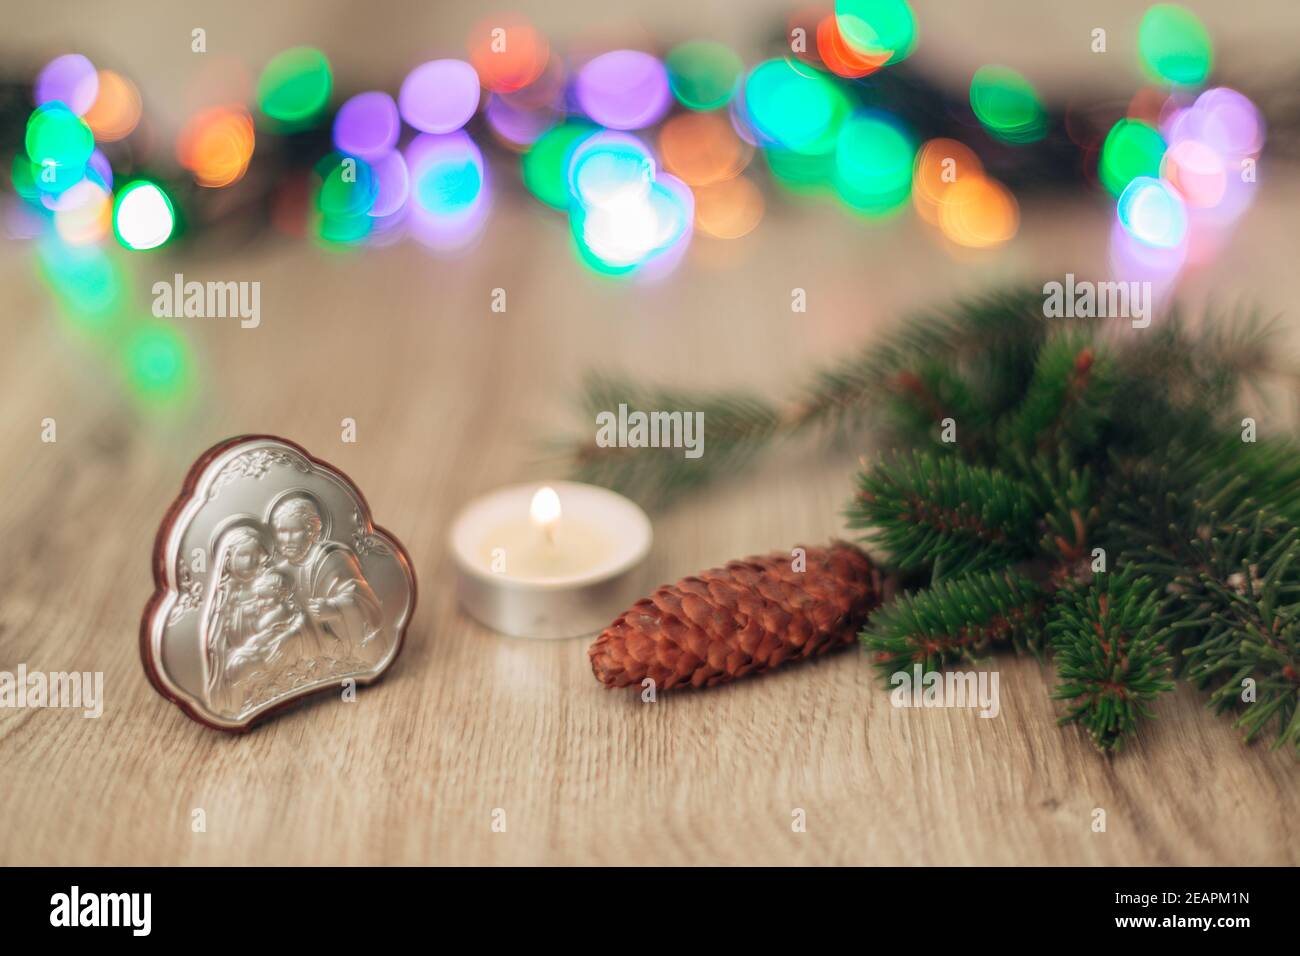 Weihnachtskomposition der Kirche Ikone auf einem hölzernen Hintergrund mit Mehrfarbiges Helles Boken Stockfoto